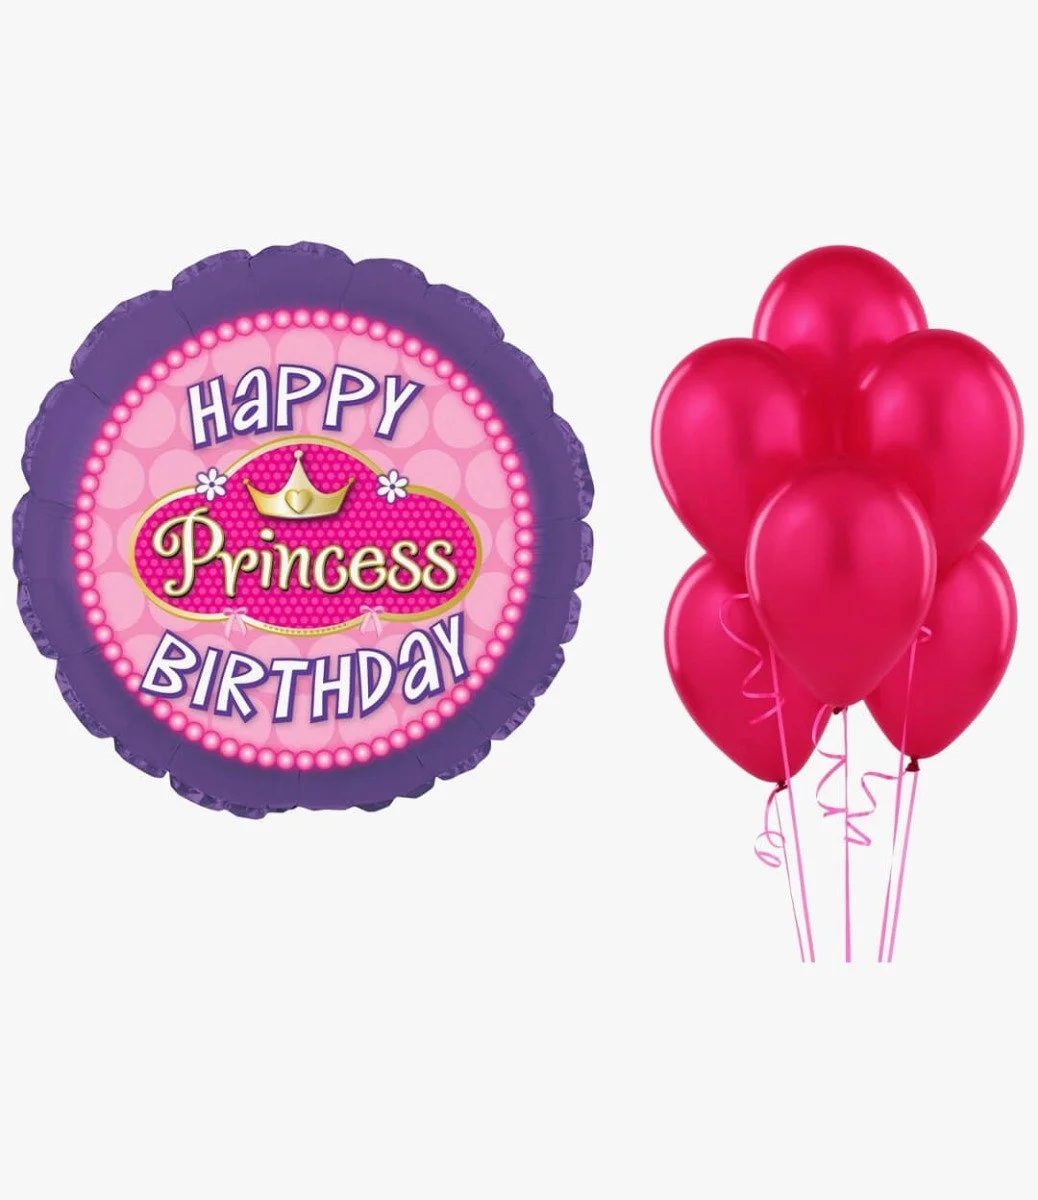 Happy Birthday Princess Balloon and 6 Pink Balloons